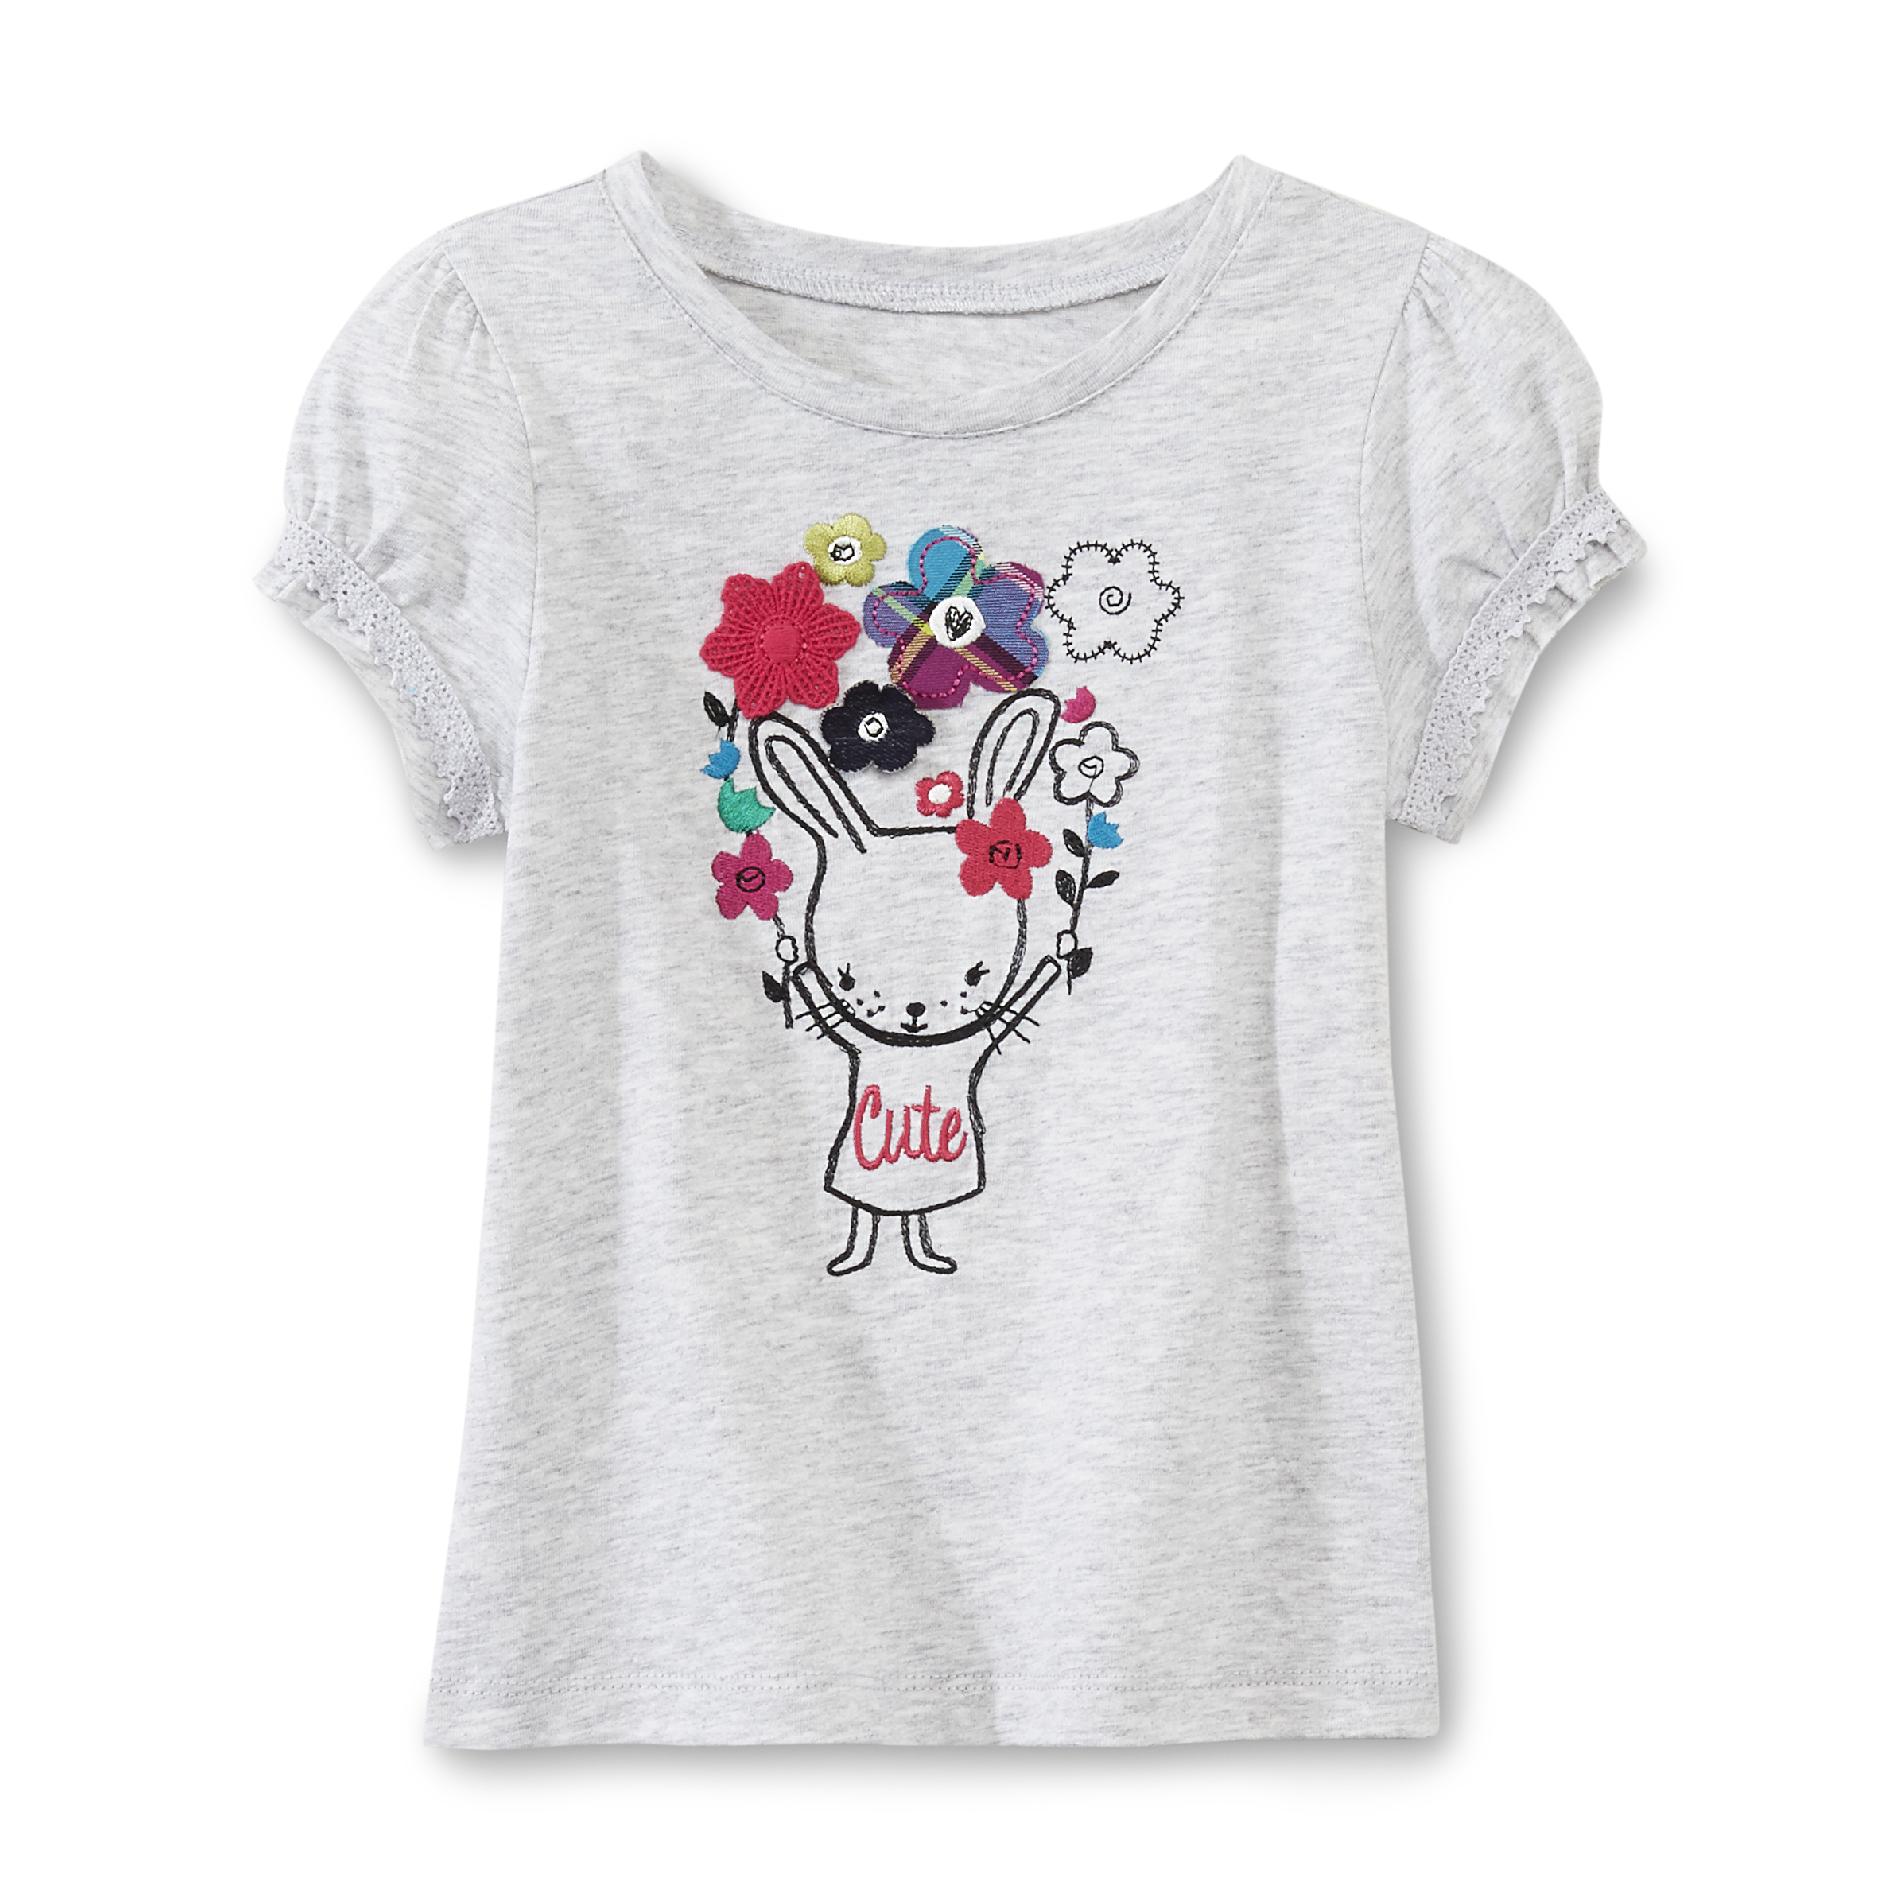 Toughskins Toddler Girl's Cap Sleeve T-Shirt - Bunny